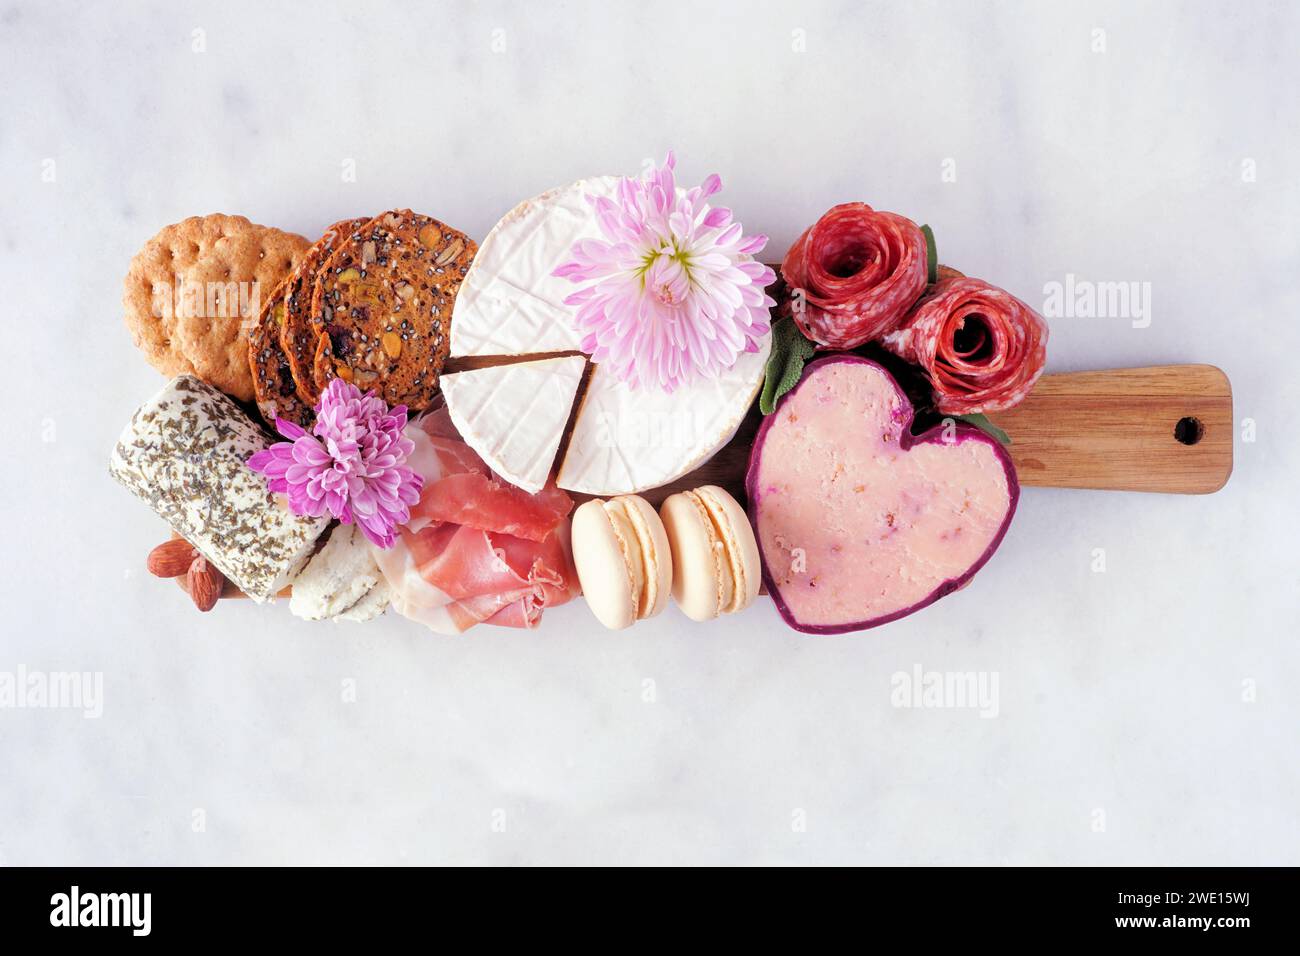 Tagliere a tema Festa della mamma su sfondo di marmo bianco. Varietà di formaggi, carne, frutta e antipasti dolci. Vista dall'alto. Foto Stock